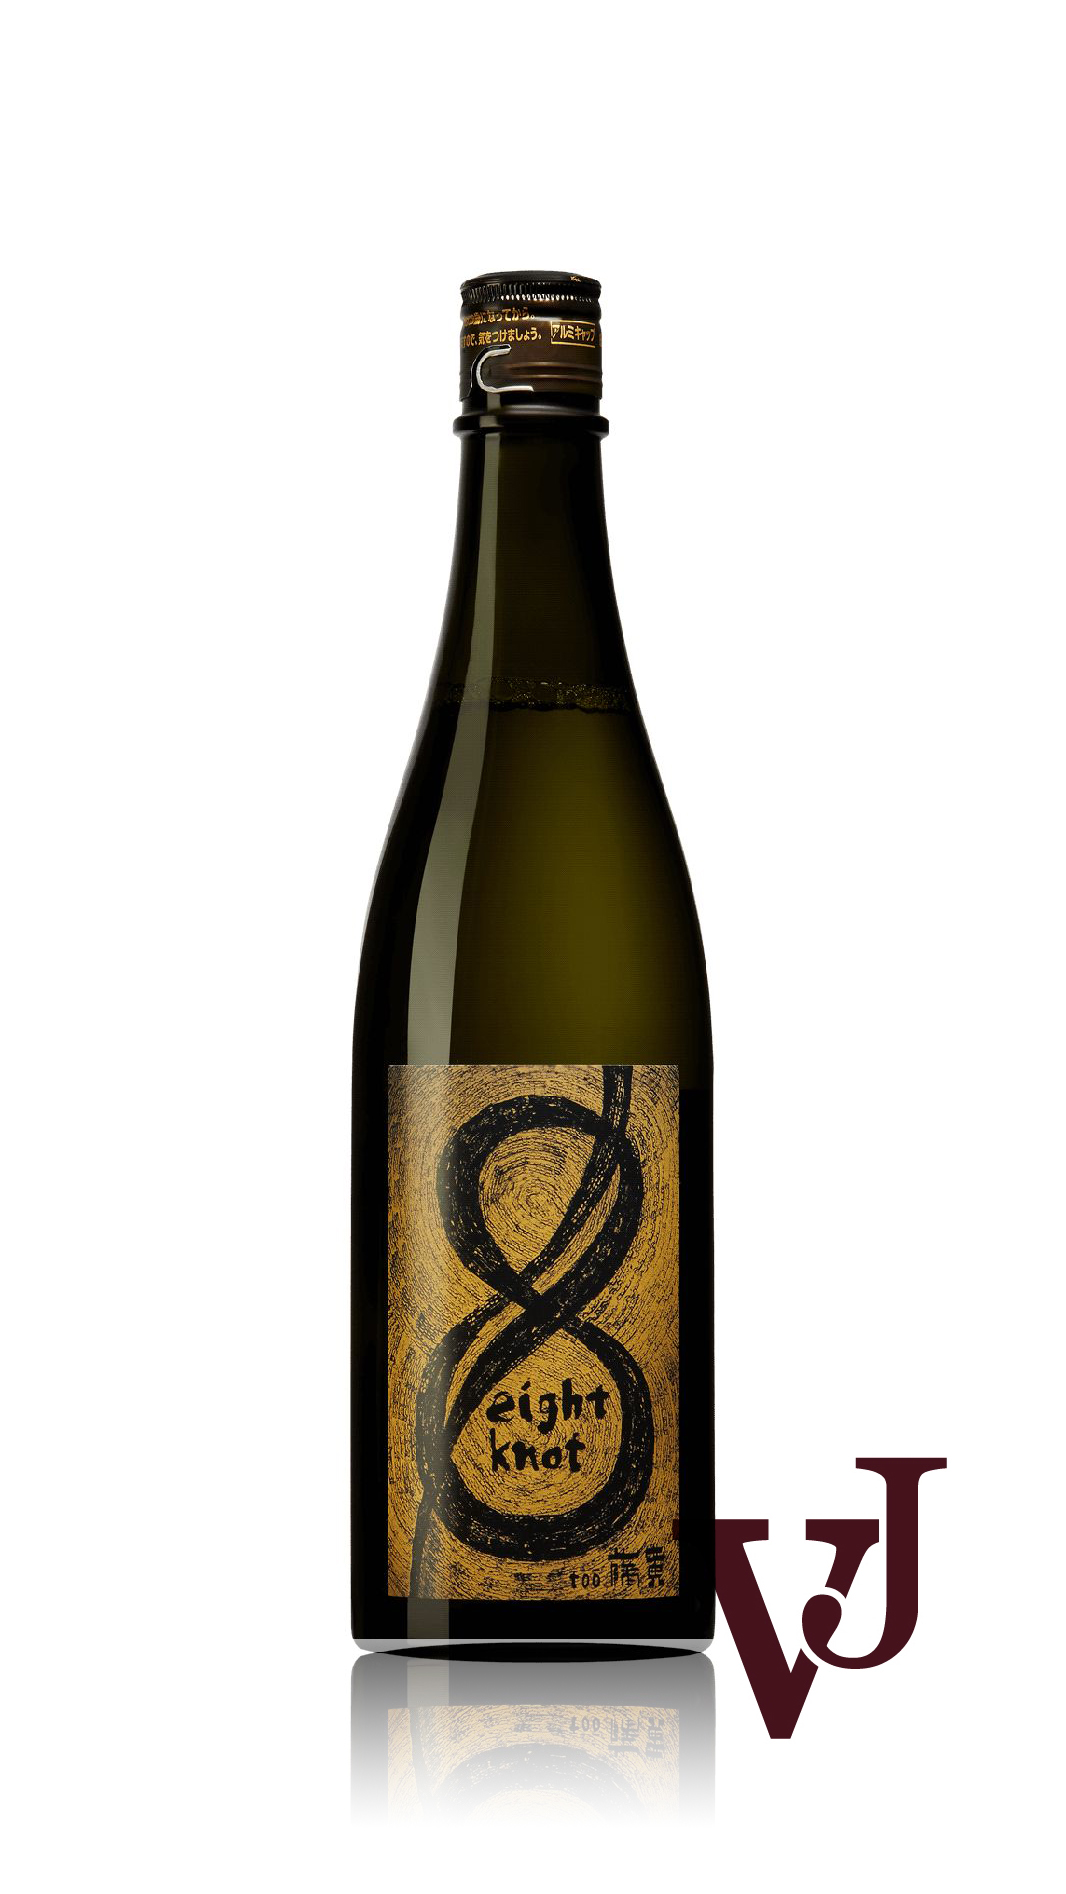 Sake - Eight Knot Touou Junmai artikel nummer 9382701 från producenten Murashige Sake Brewery från Japan.